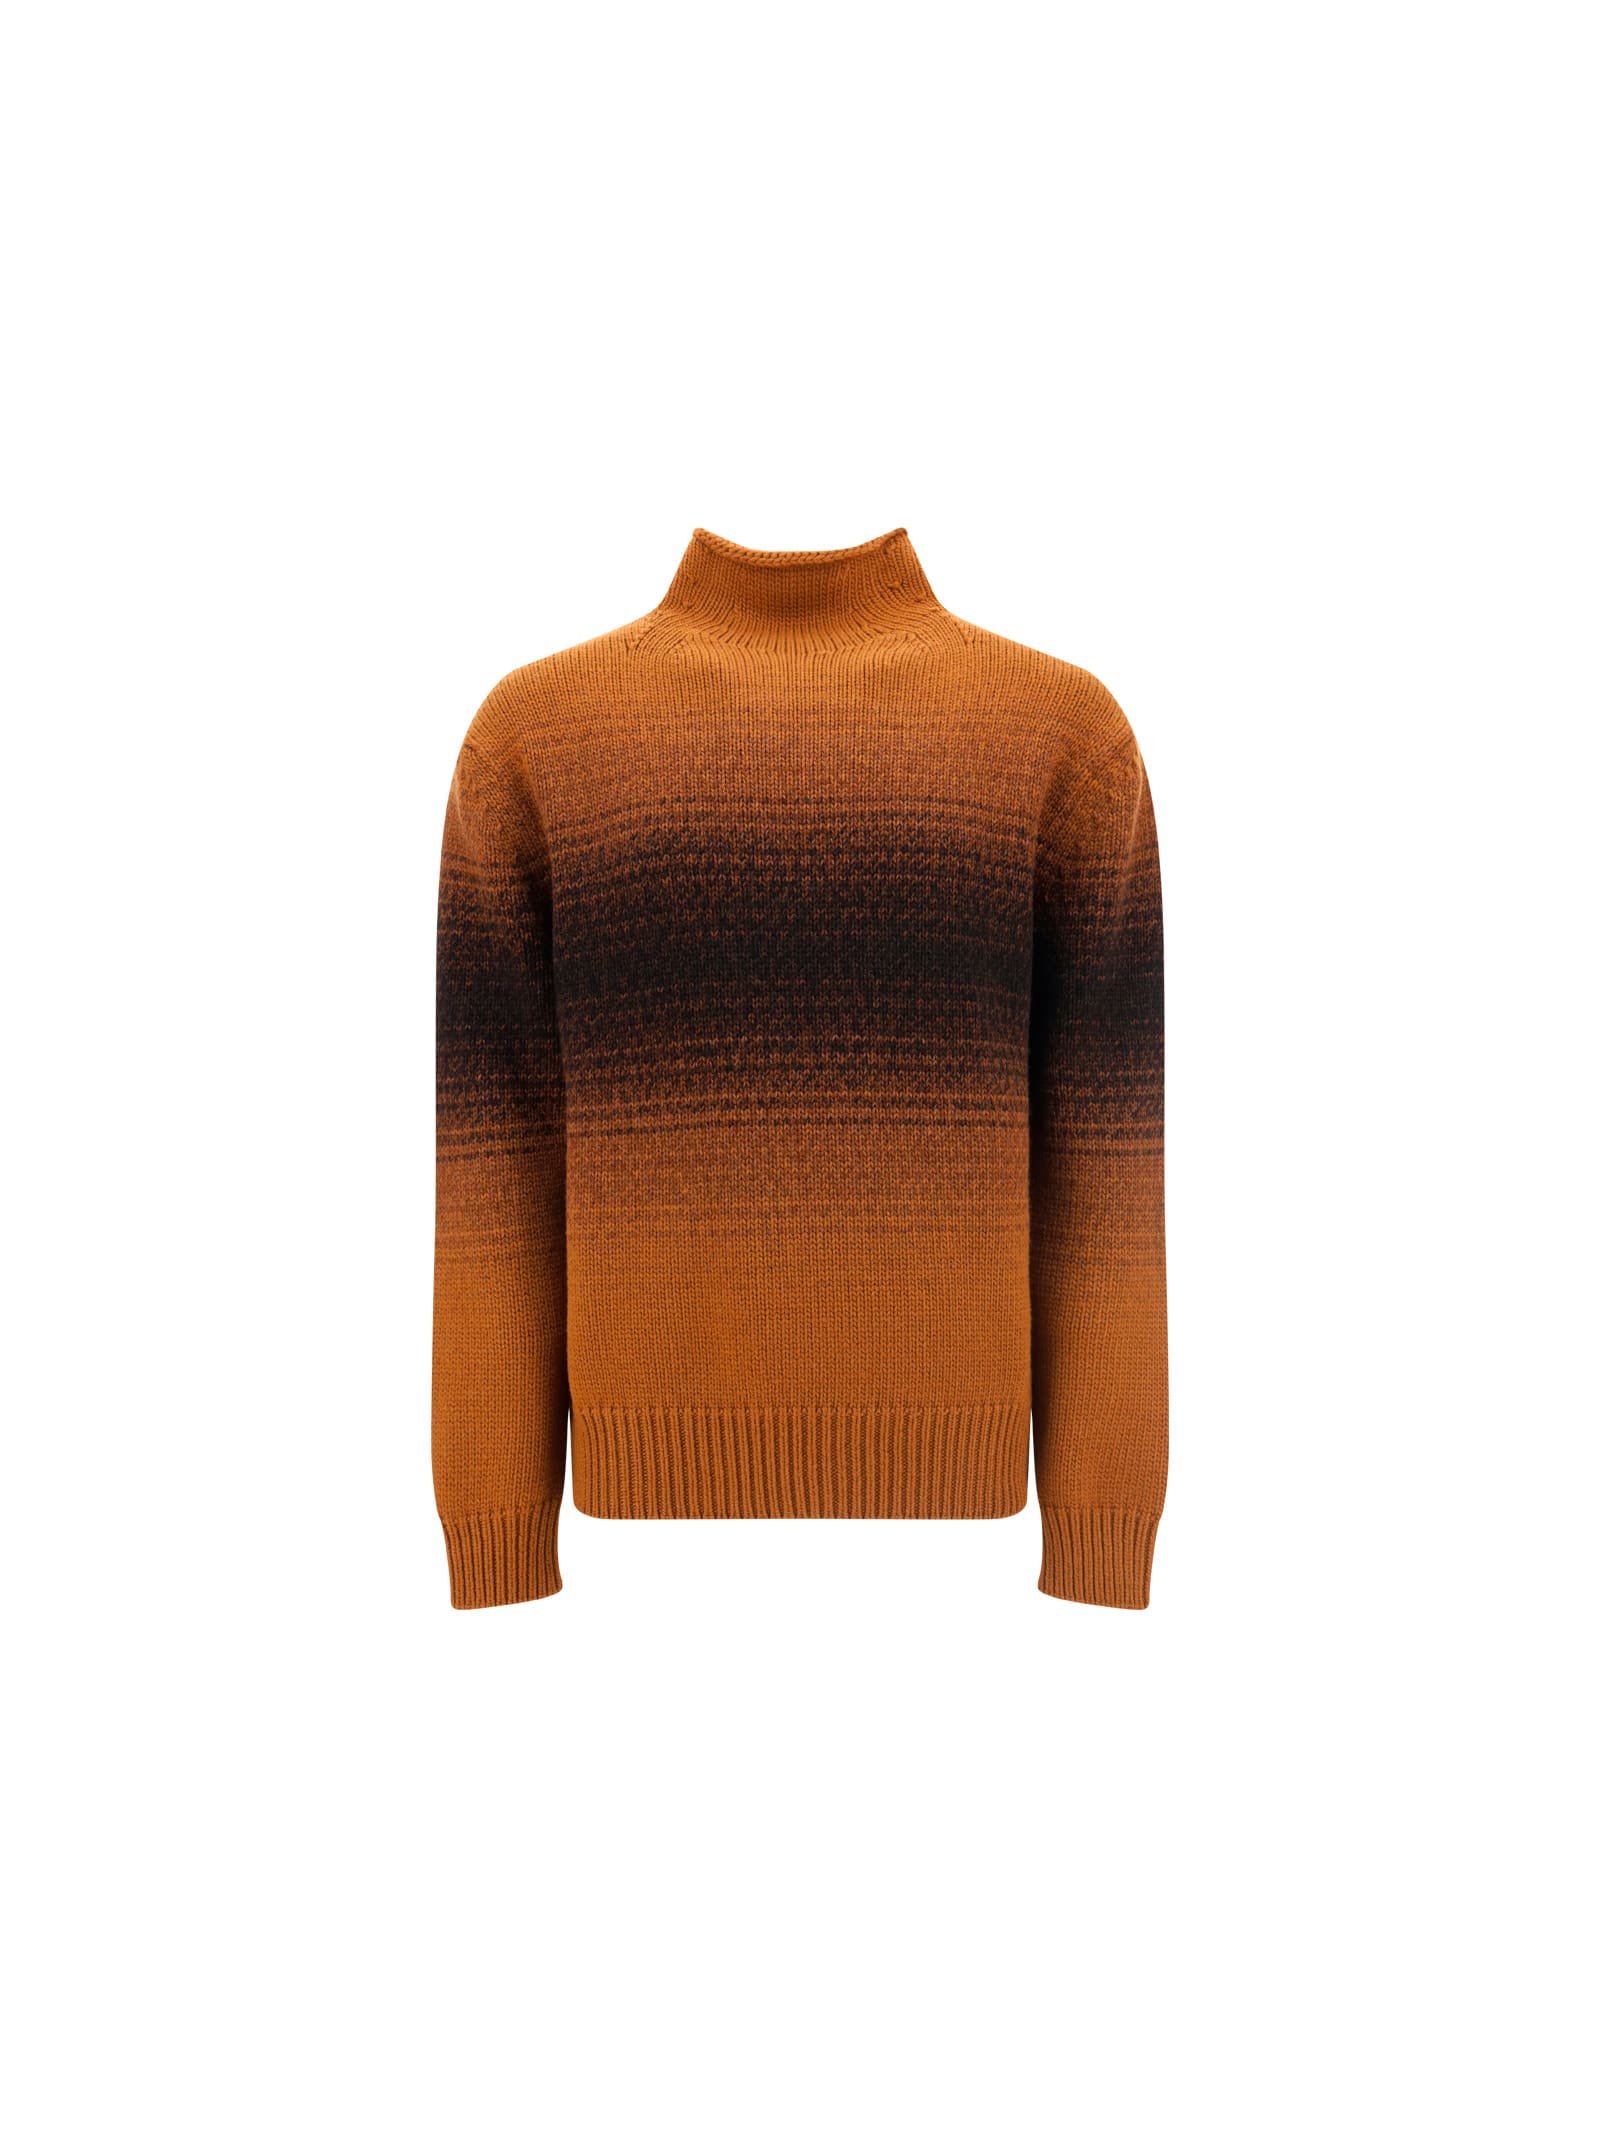 Ermenegildo Zegna Turtleneck Sweater